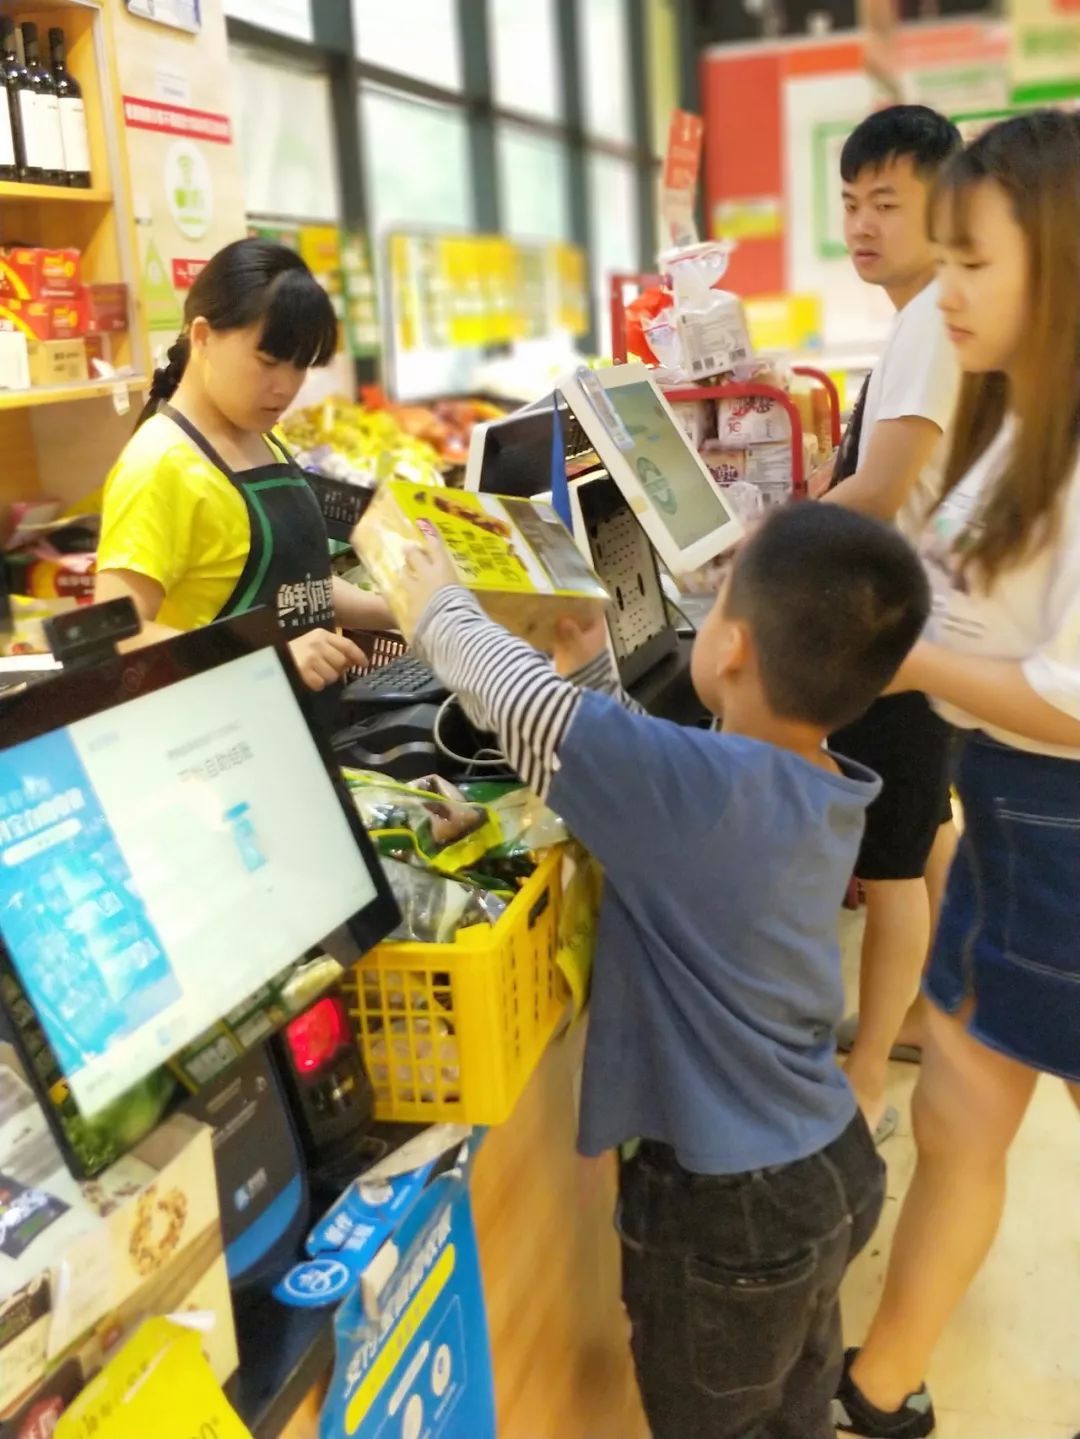 在商品没有价格标签的时候,该如何使用礼貌用语问收银员,懂得了超市里